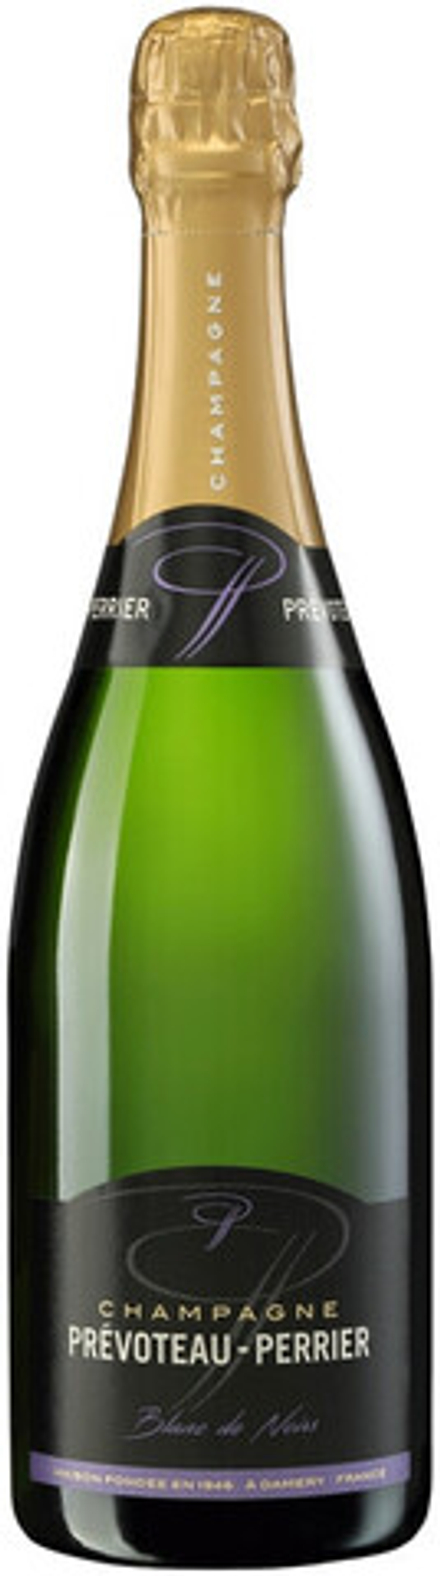 Шампанское Champagne Prevoteau-Perrier  Blanc de Noirs Brut, 0,75 л.